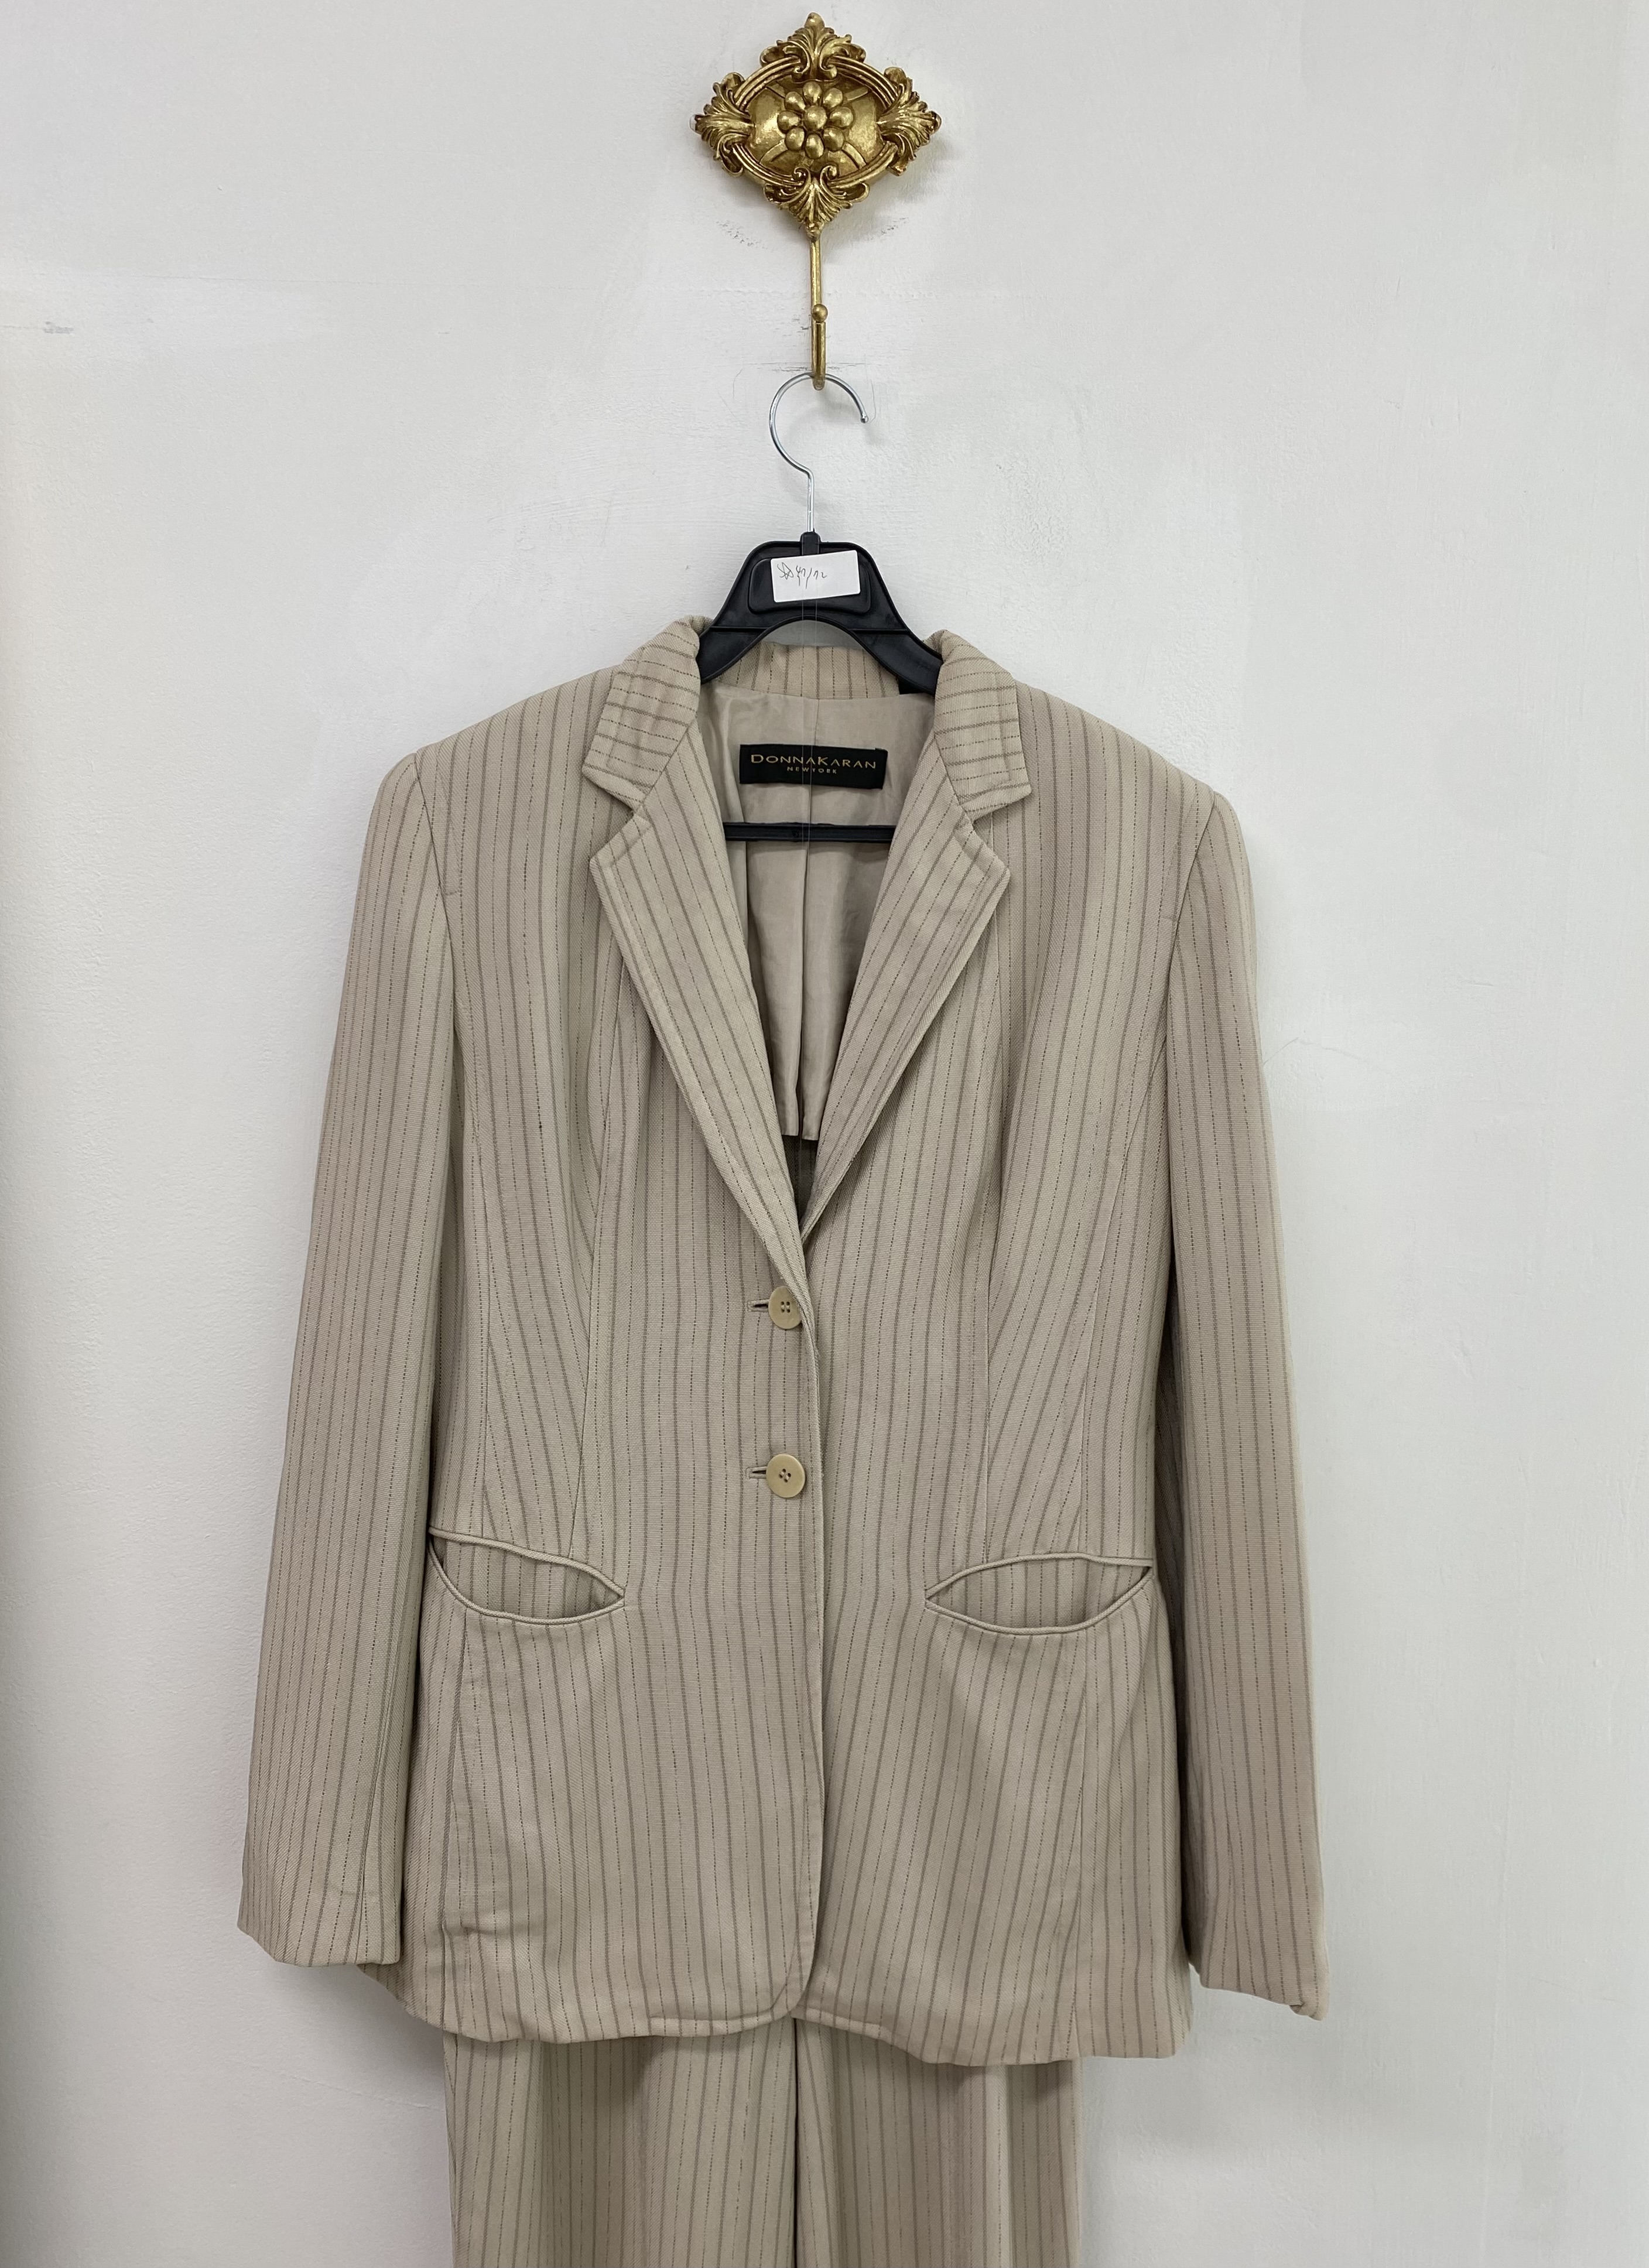 Donna Karan beige stripe two button jacket pants setup